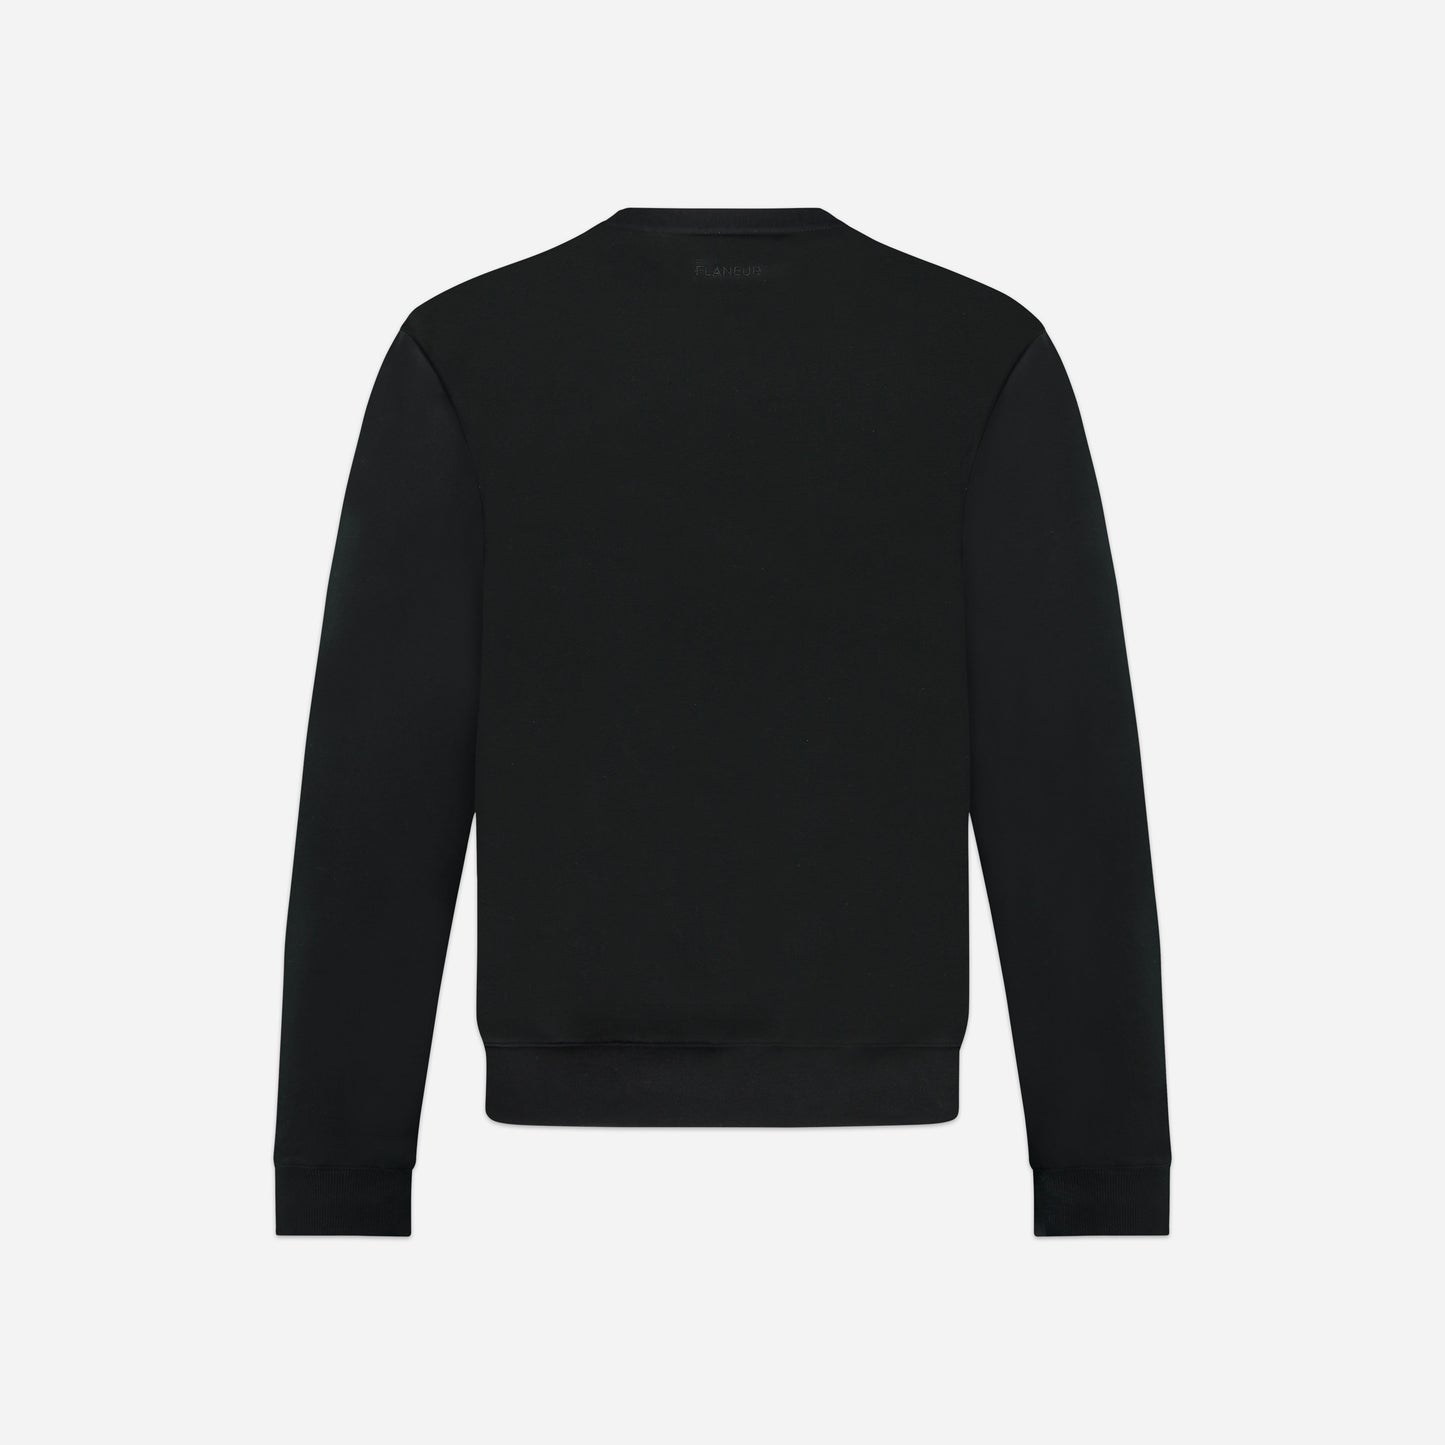 Signature Sweater Black